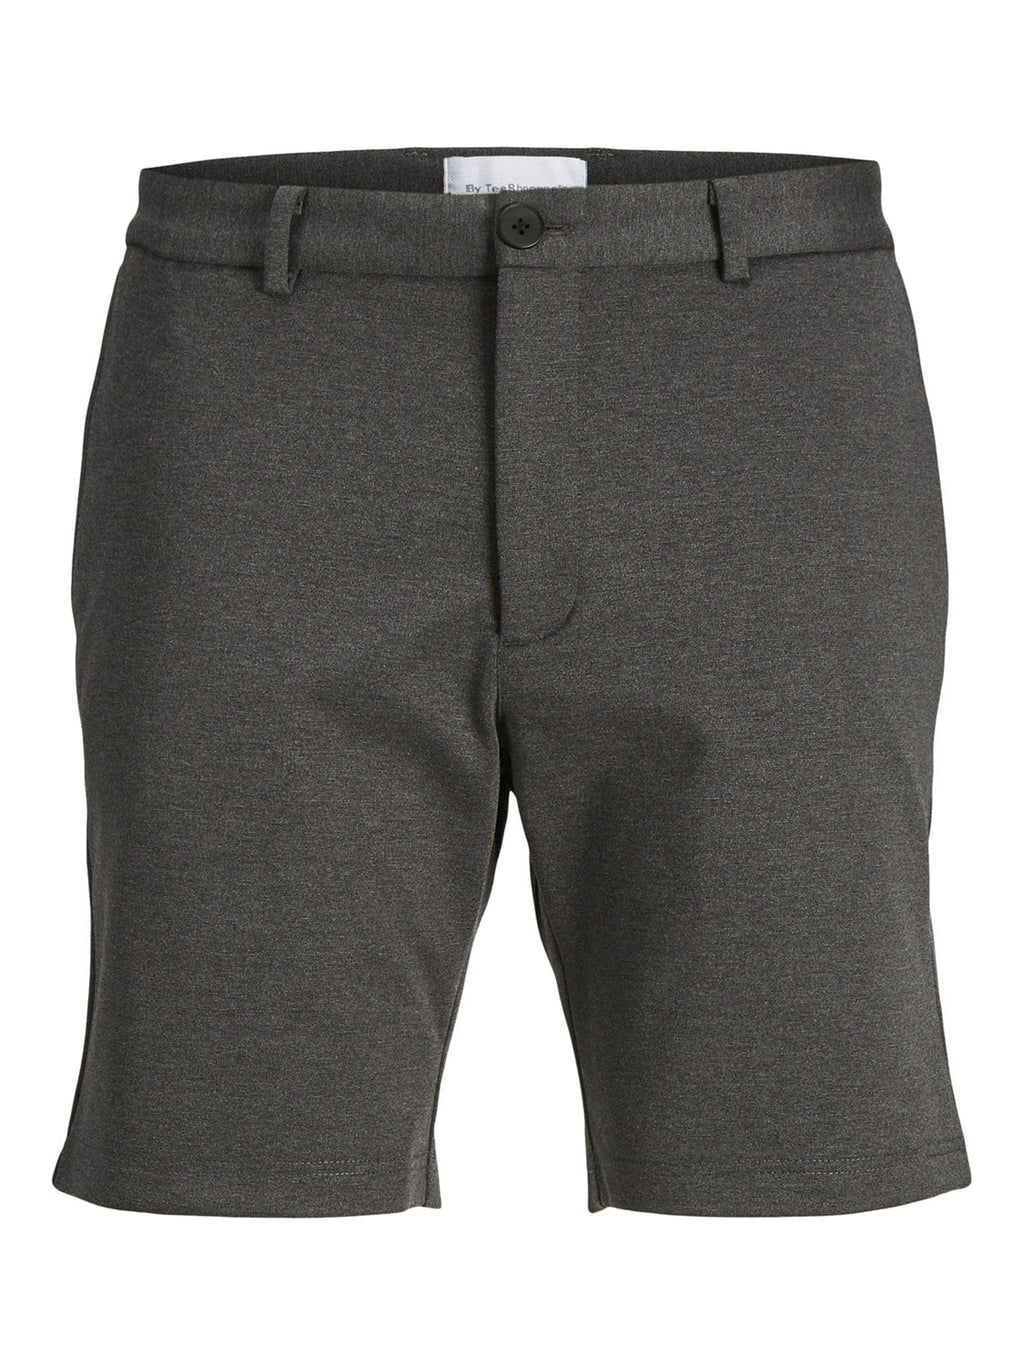 Los pantalones cortos de rendimiento originales - gris oscuro